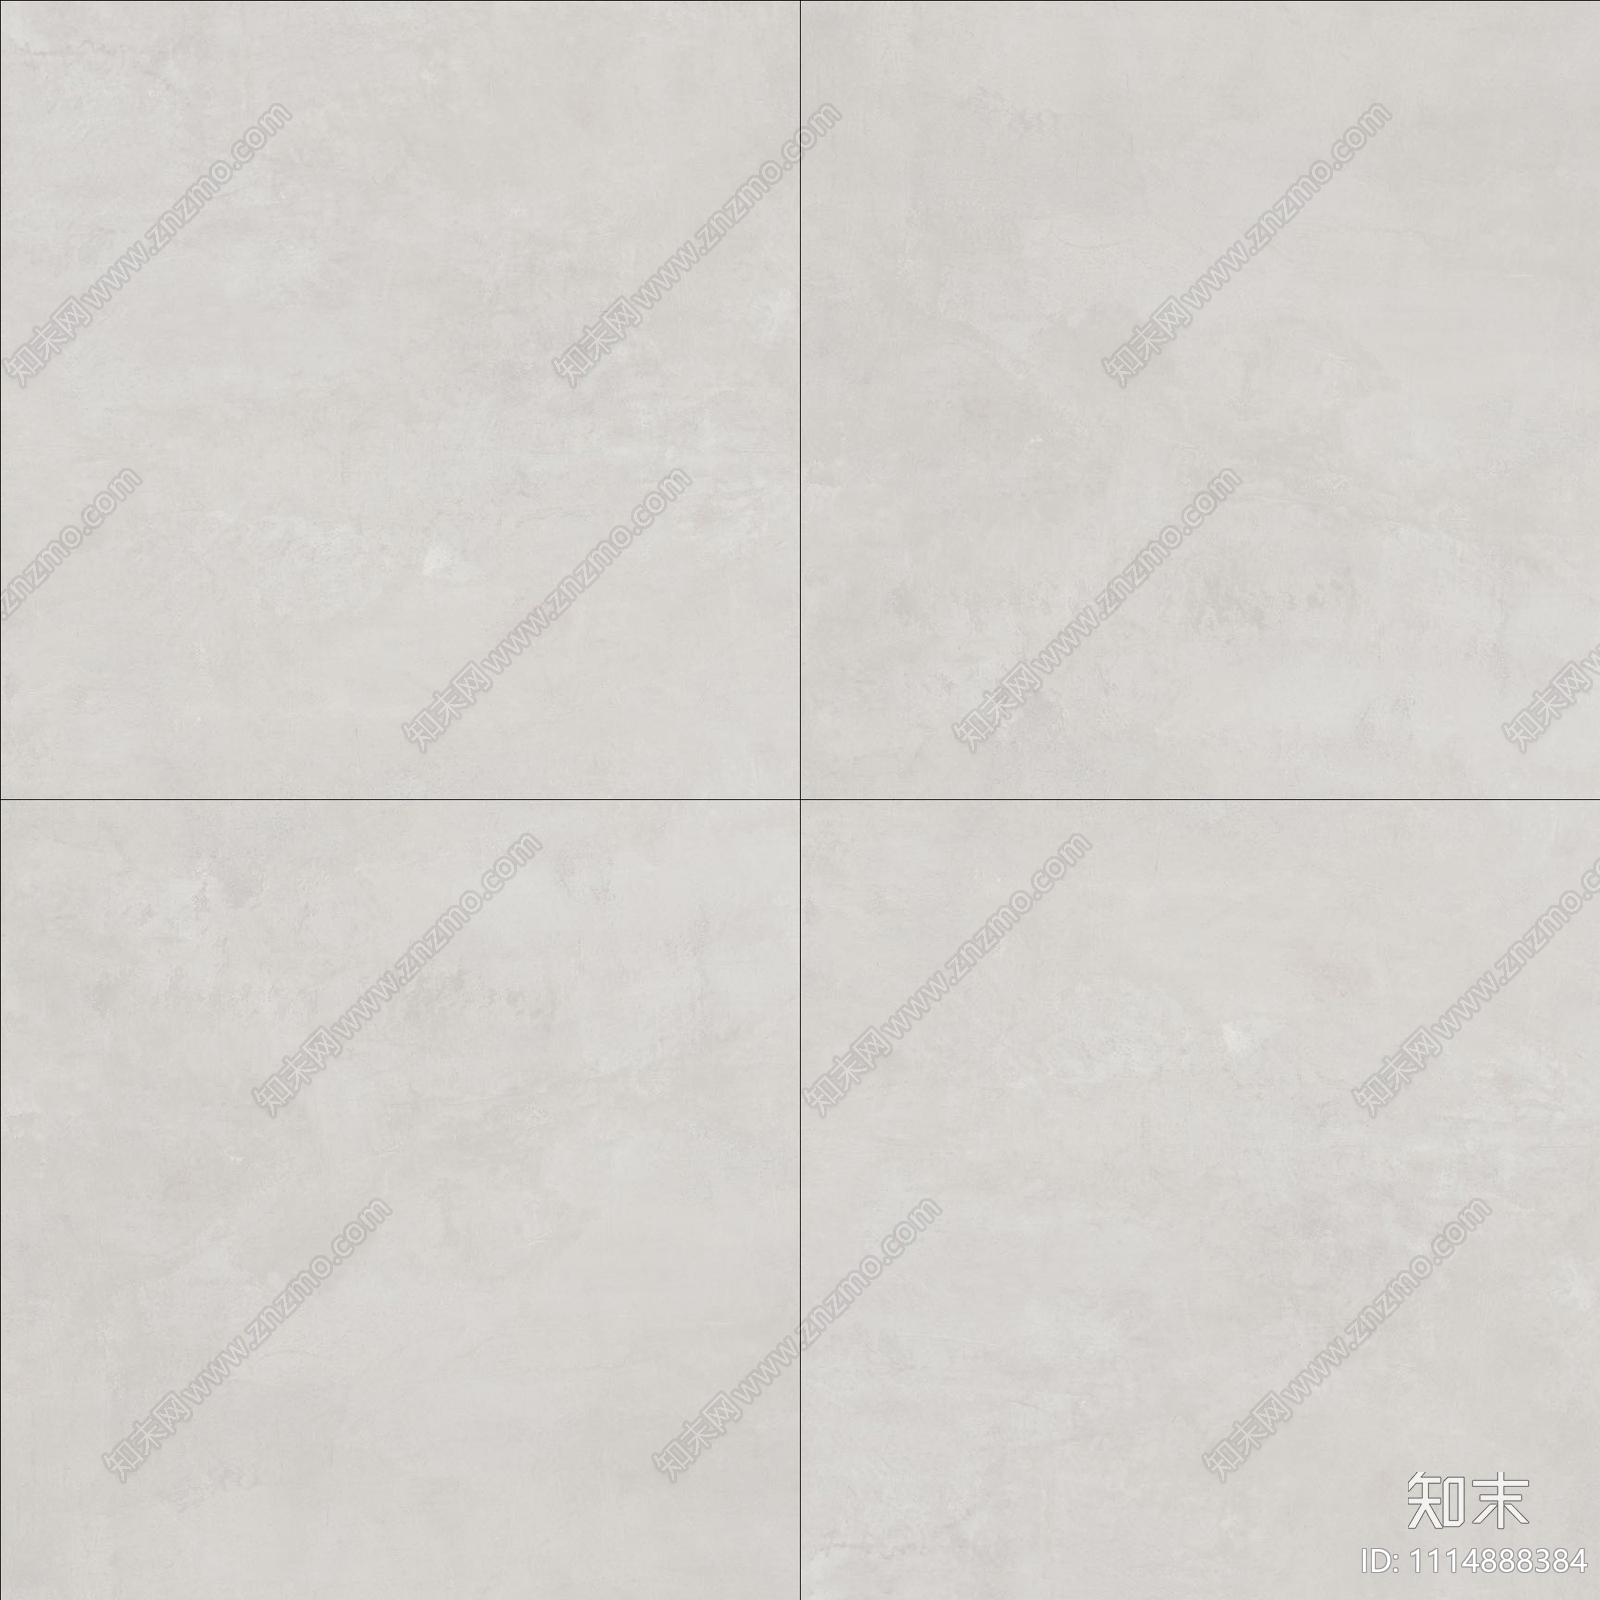 米灰色大理石瓷砖贴图下载【ID:1114888384】